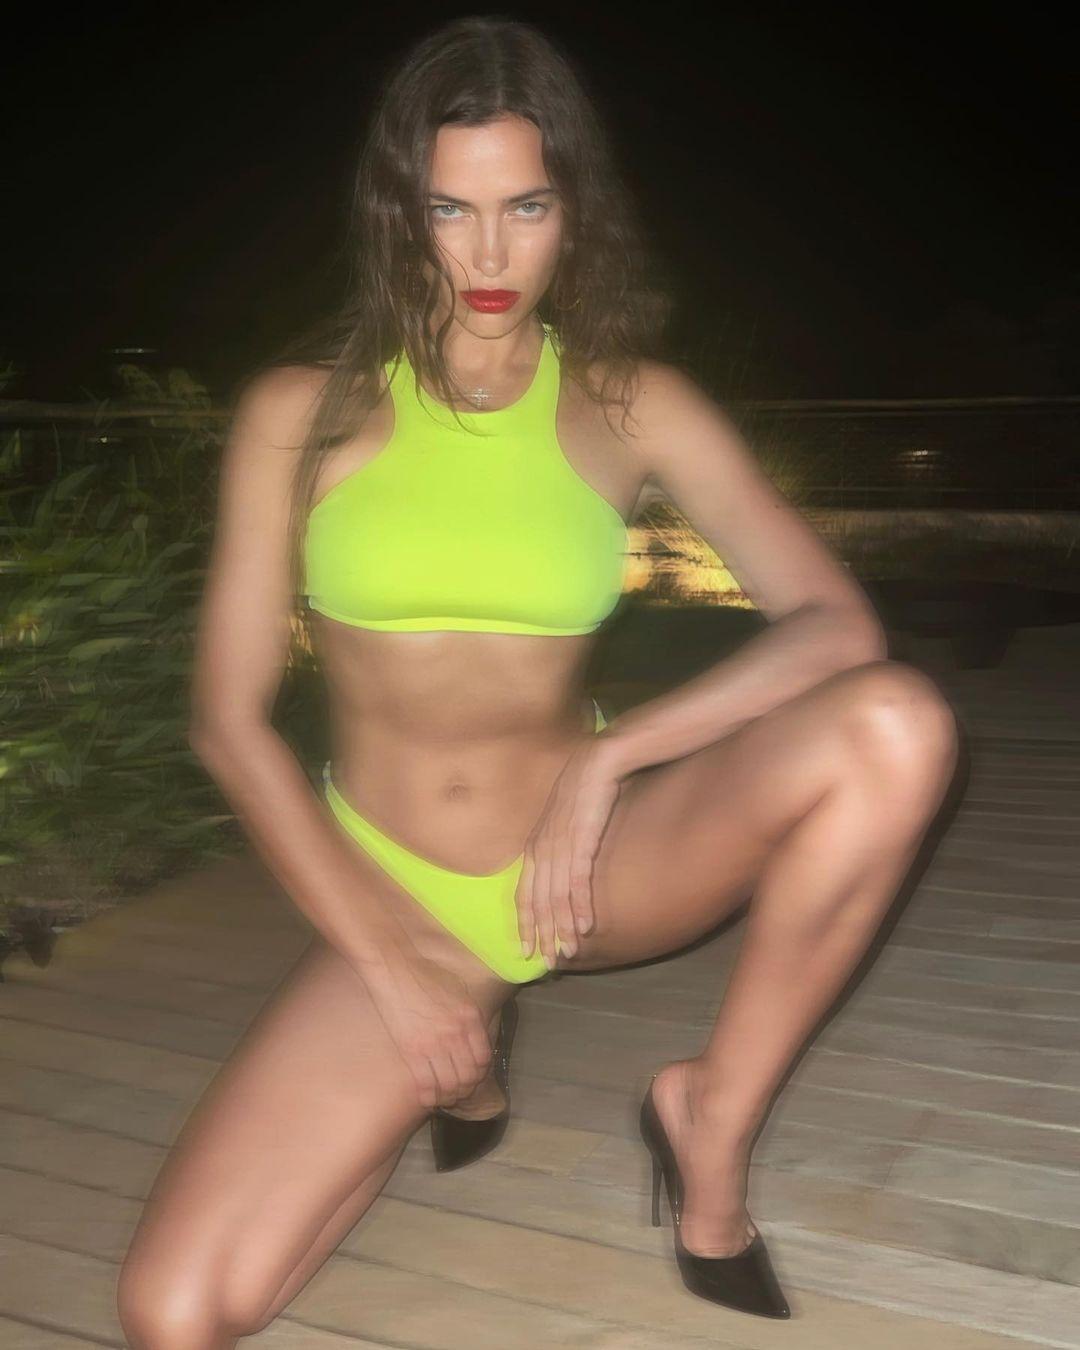 Irina Shayk looks good in a neon yellow bikini